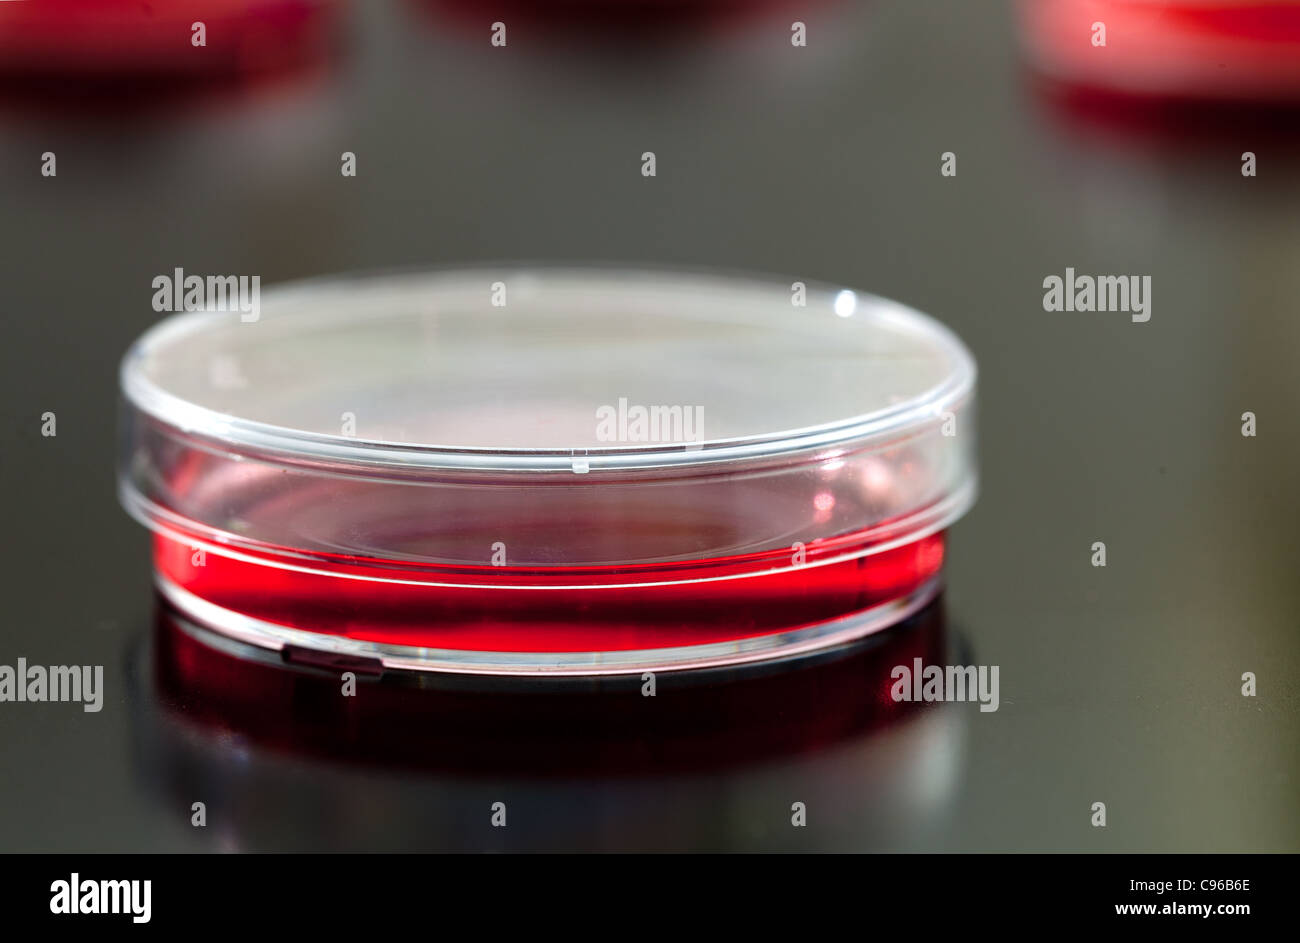 Piastre di Petri utilizzato per la coltura delle cellule eucariotiche in agar solido. Foto Stock